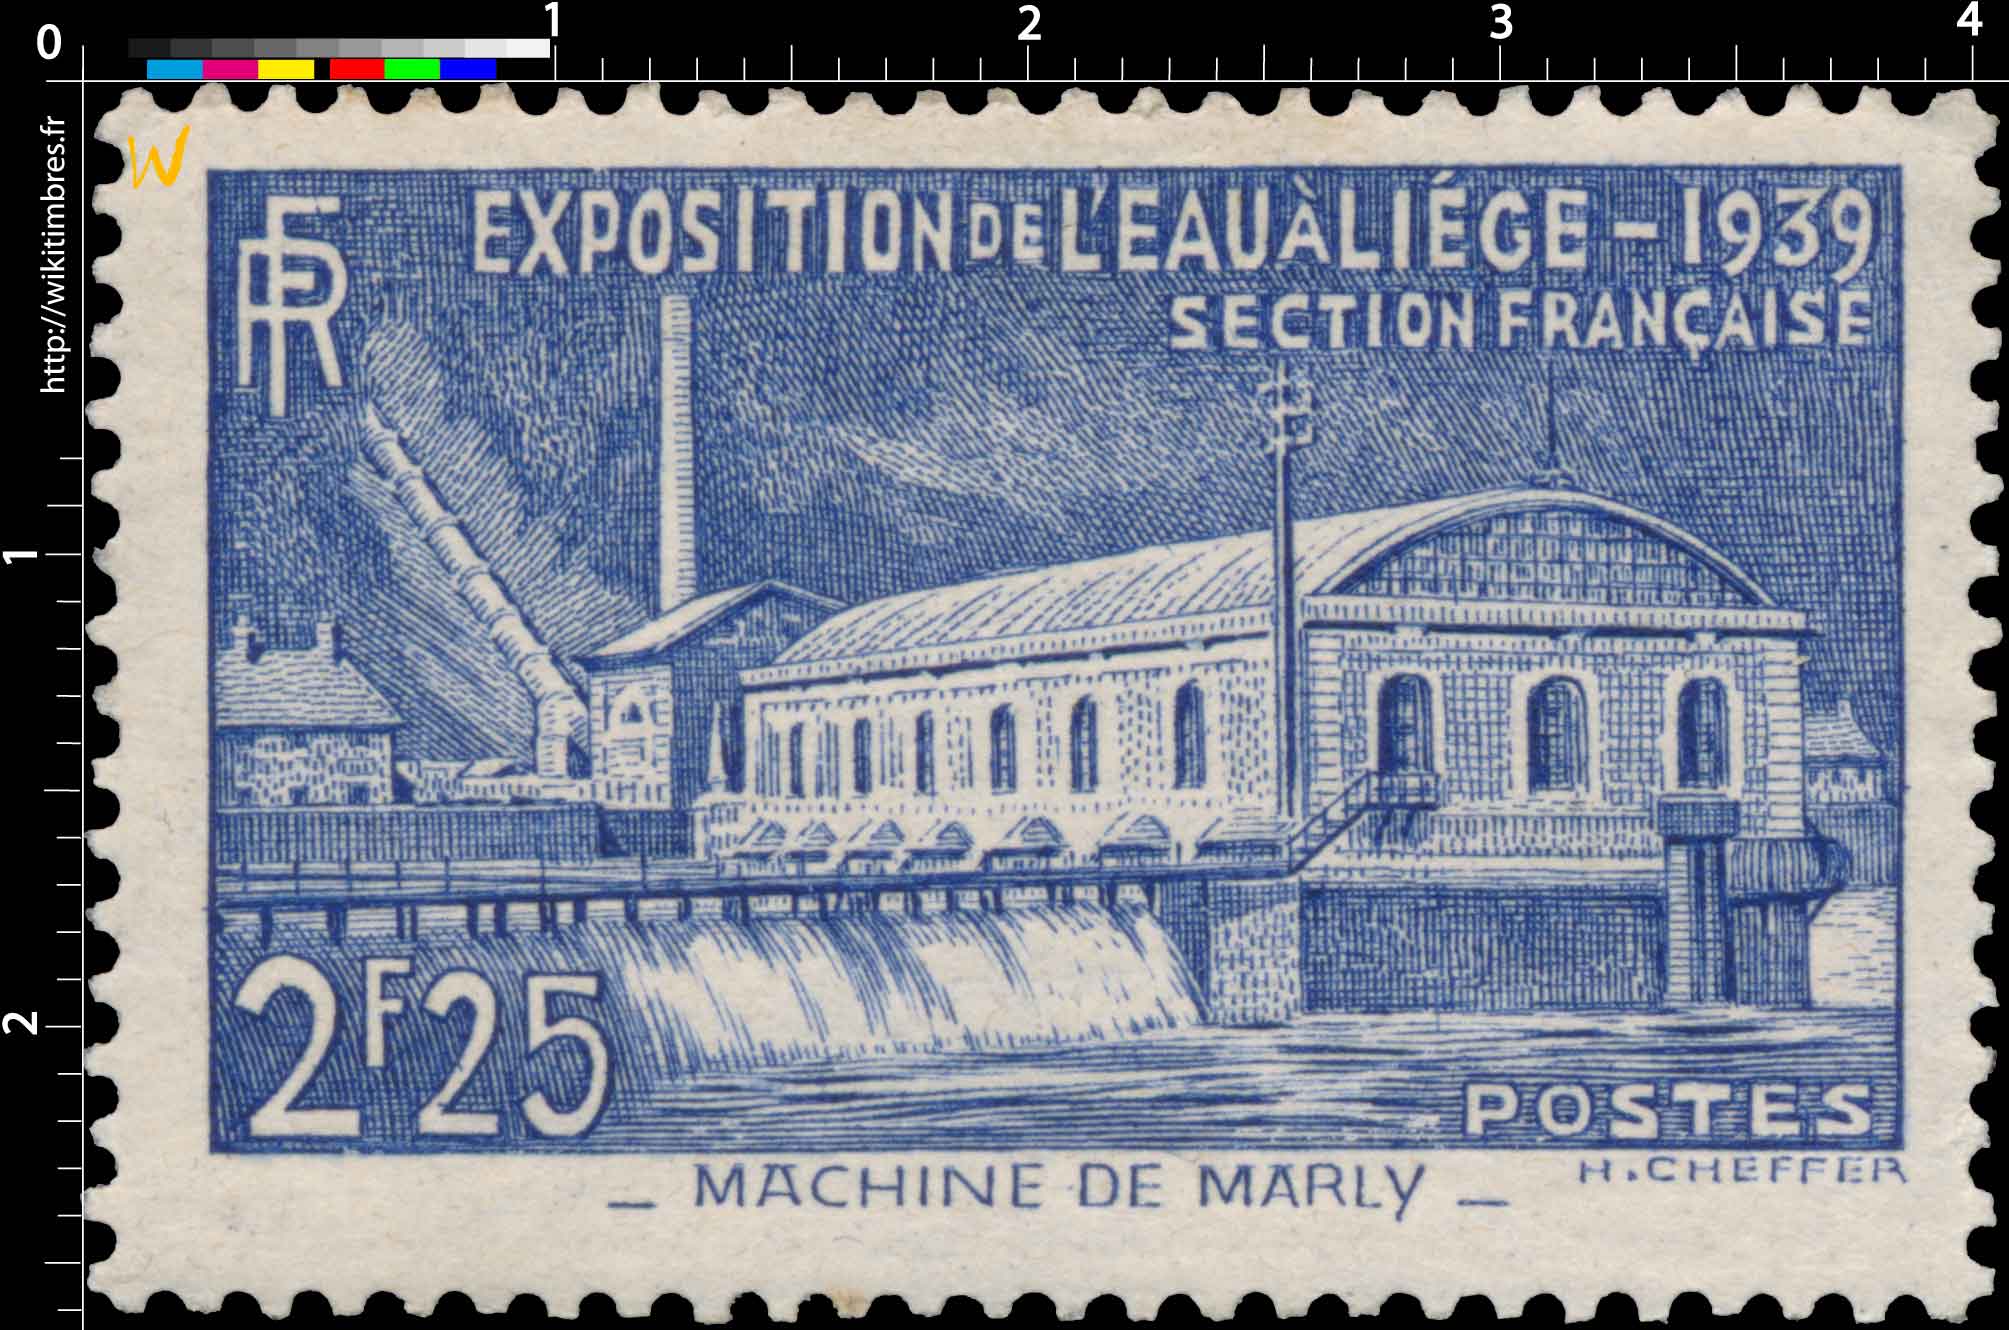 EXPOSITION DE L'EAU A LIÈGE - 1939 SECTION FRANÇAISE - MACHINE DE MARLY